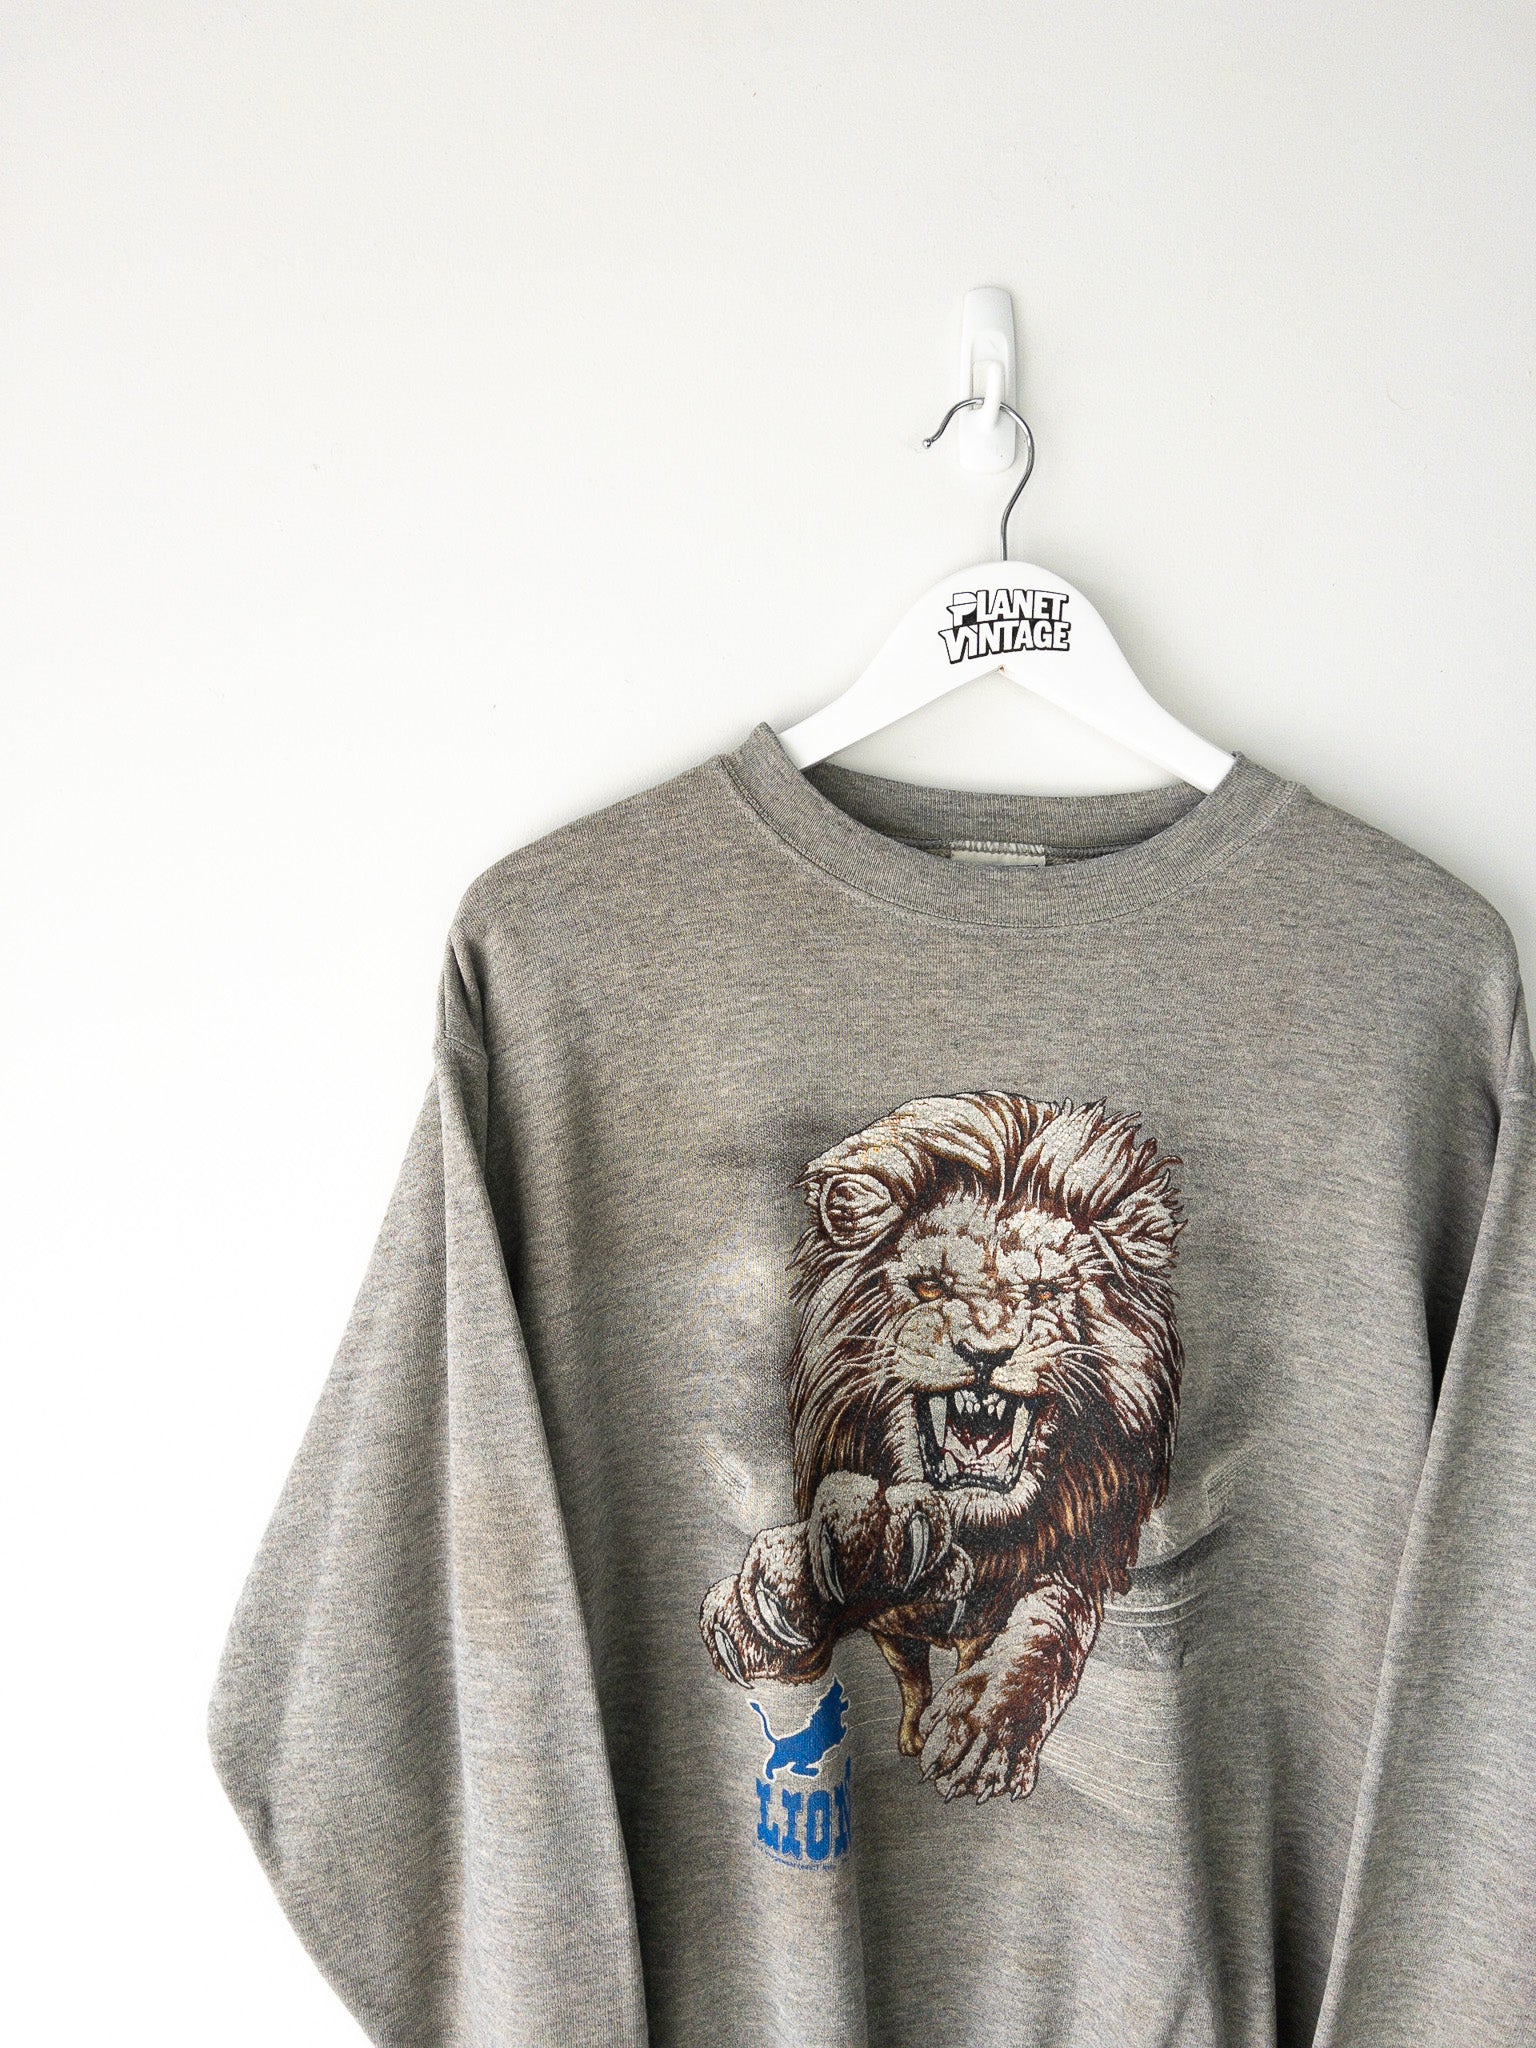 Vintage Detroit Lions Sweatshirt (M)